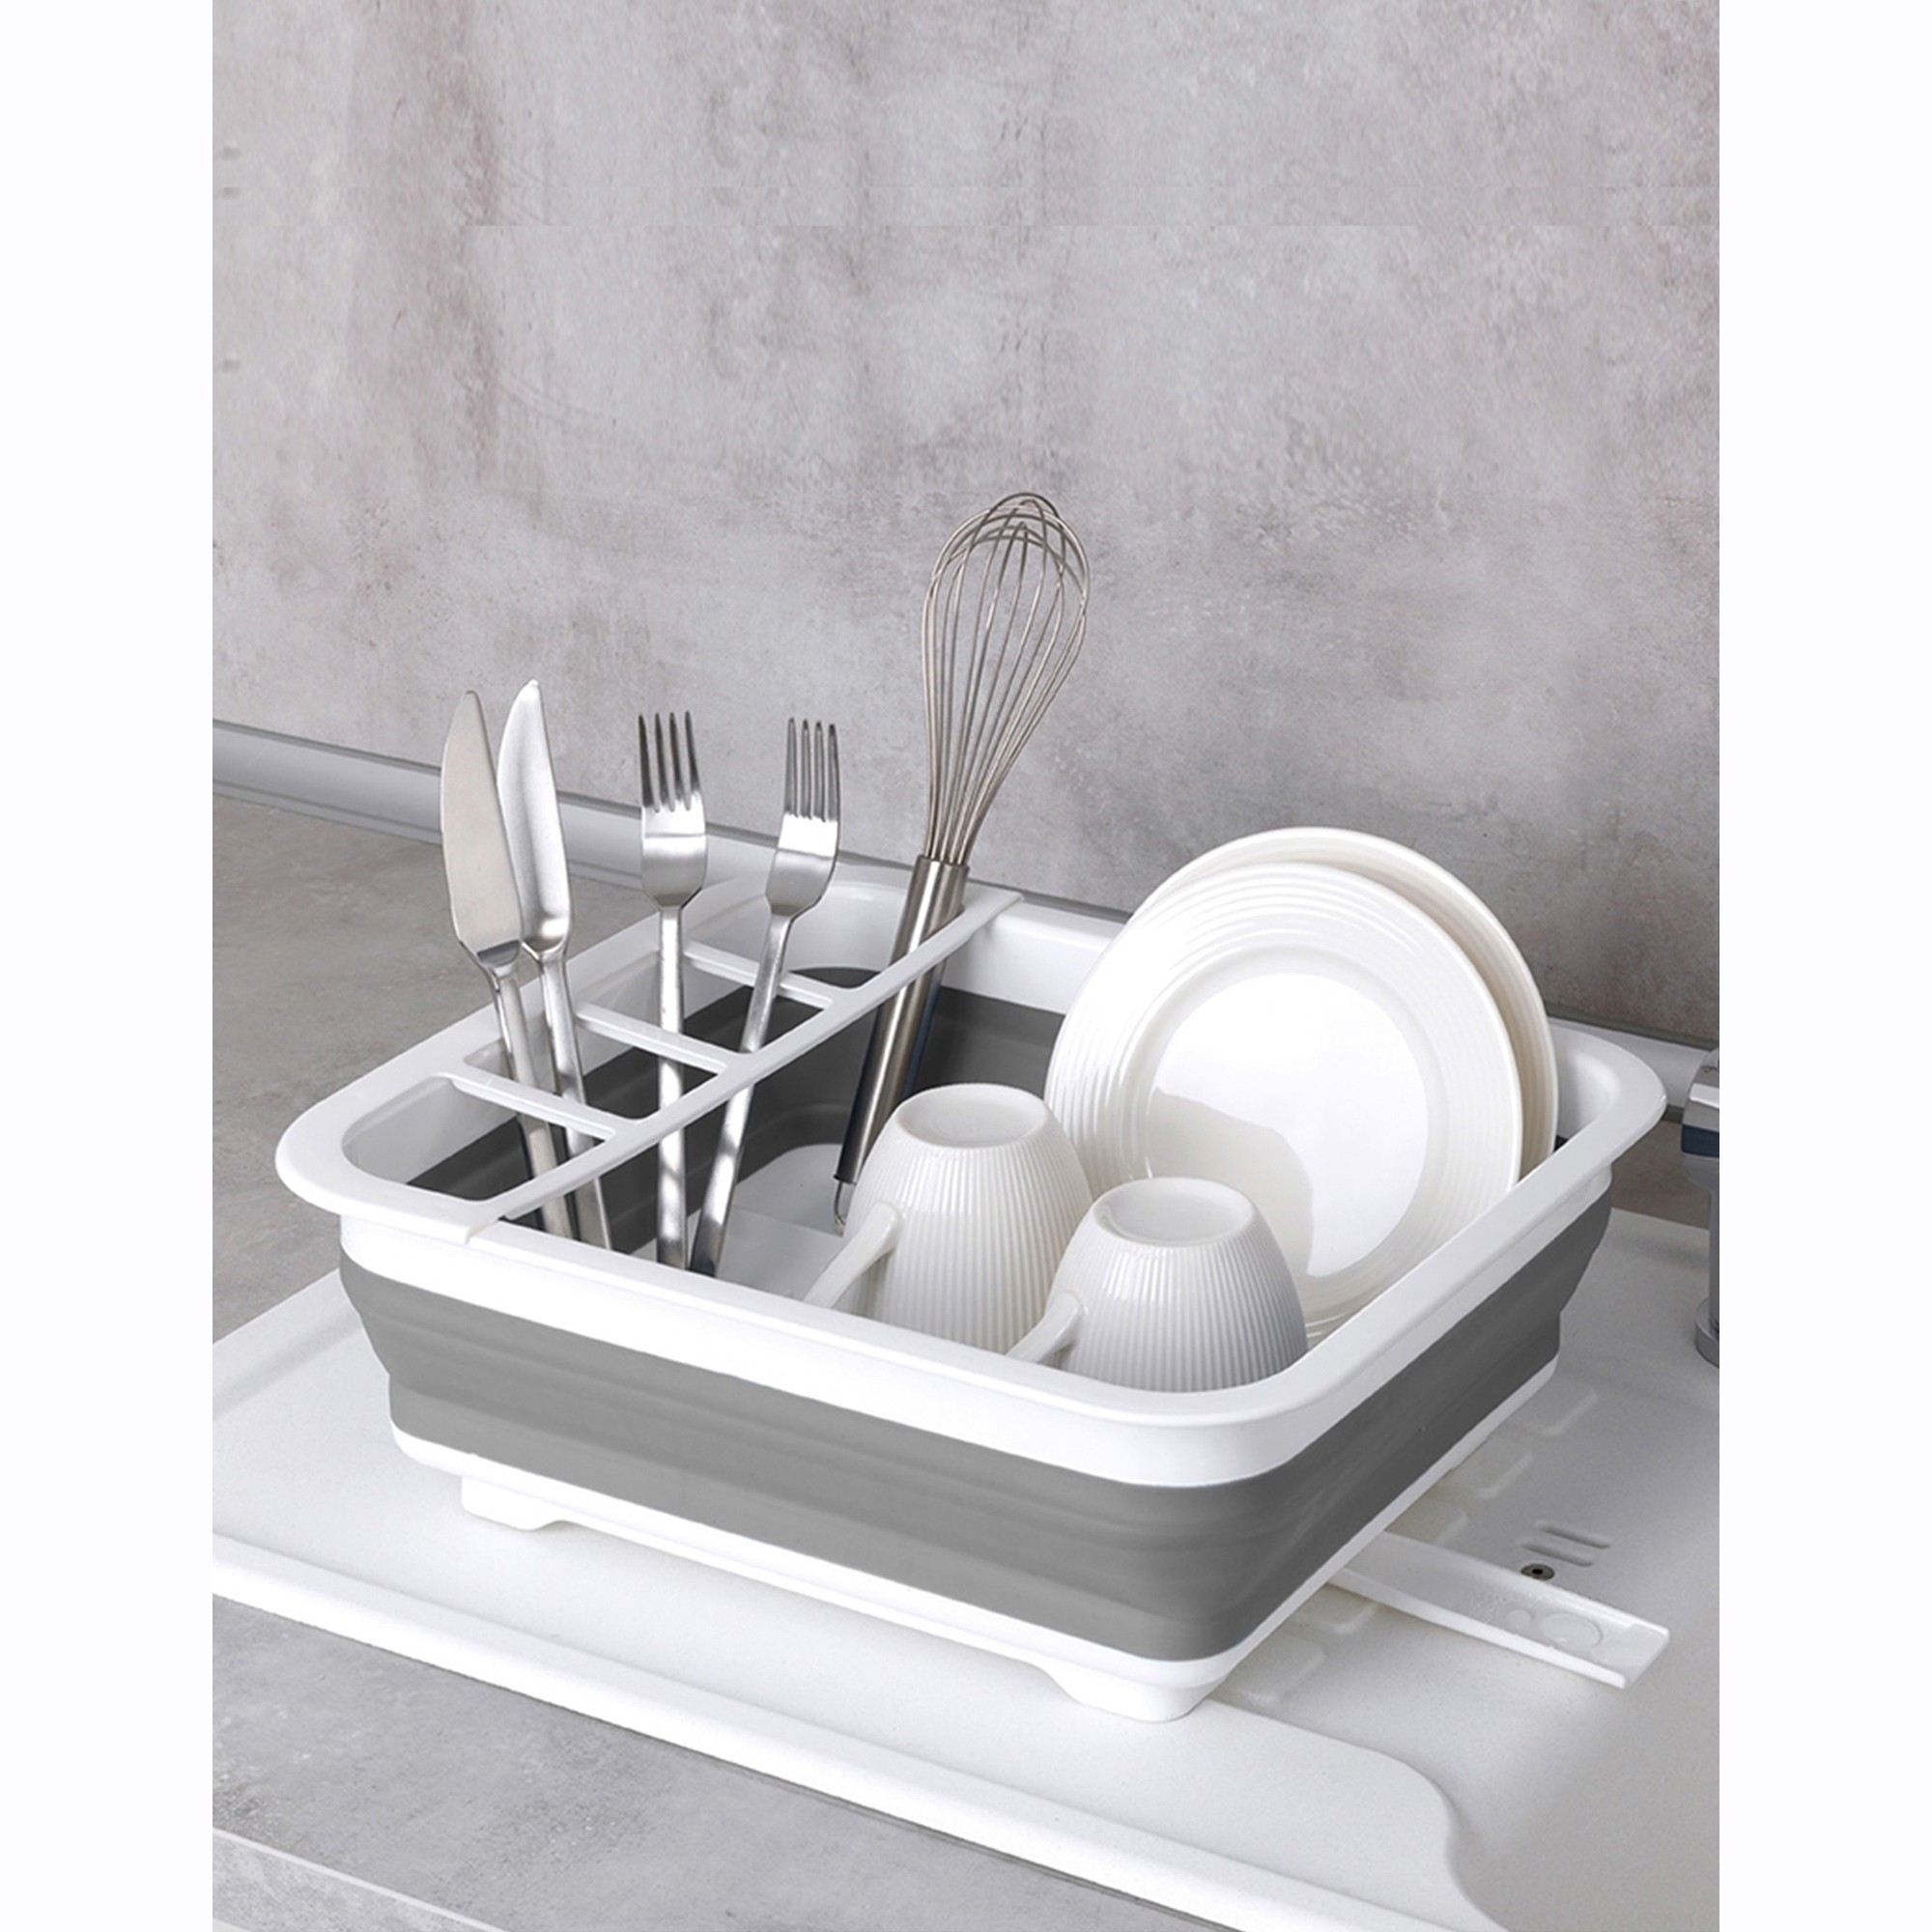 Égouttoir à vaisselle pliable, blanc/gris